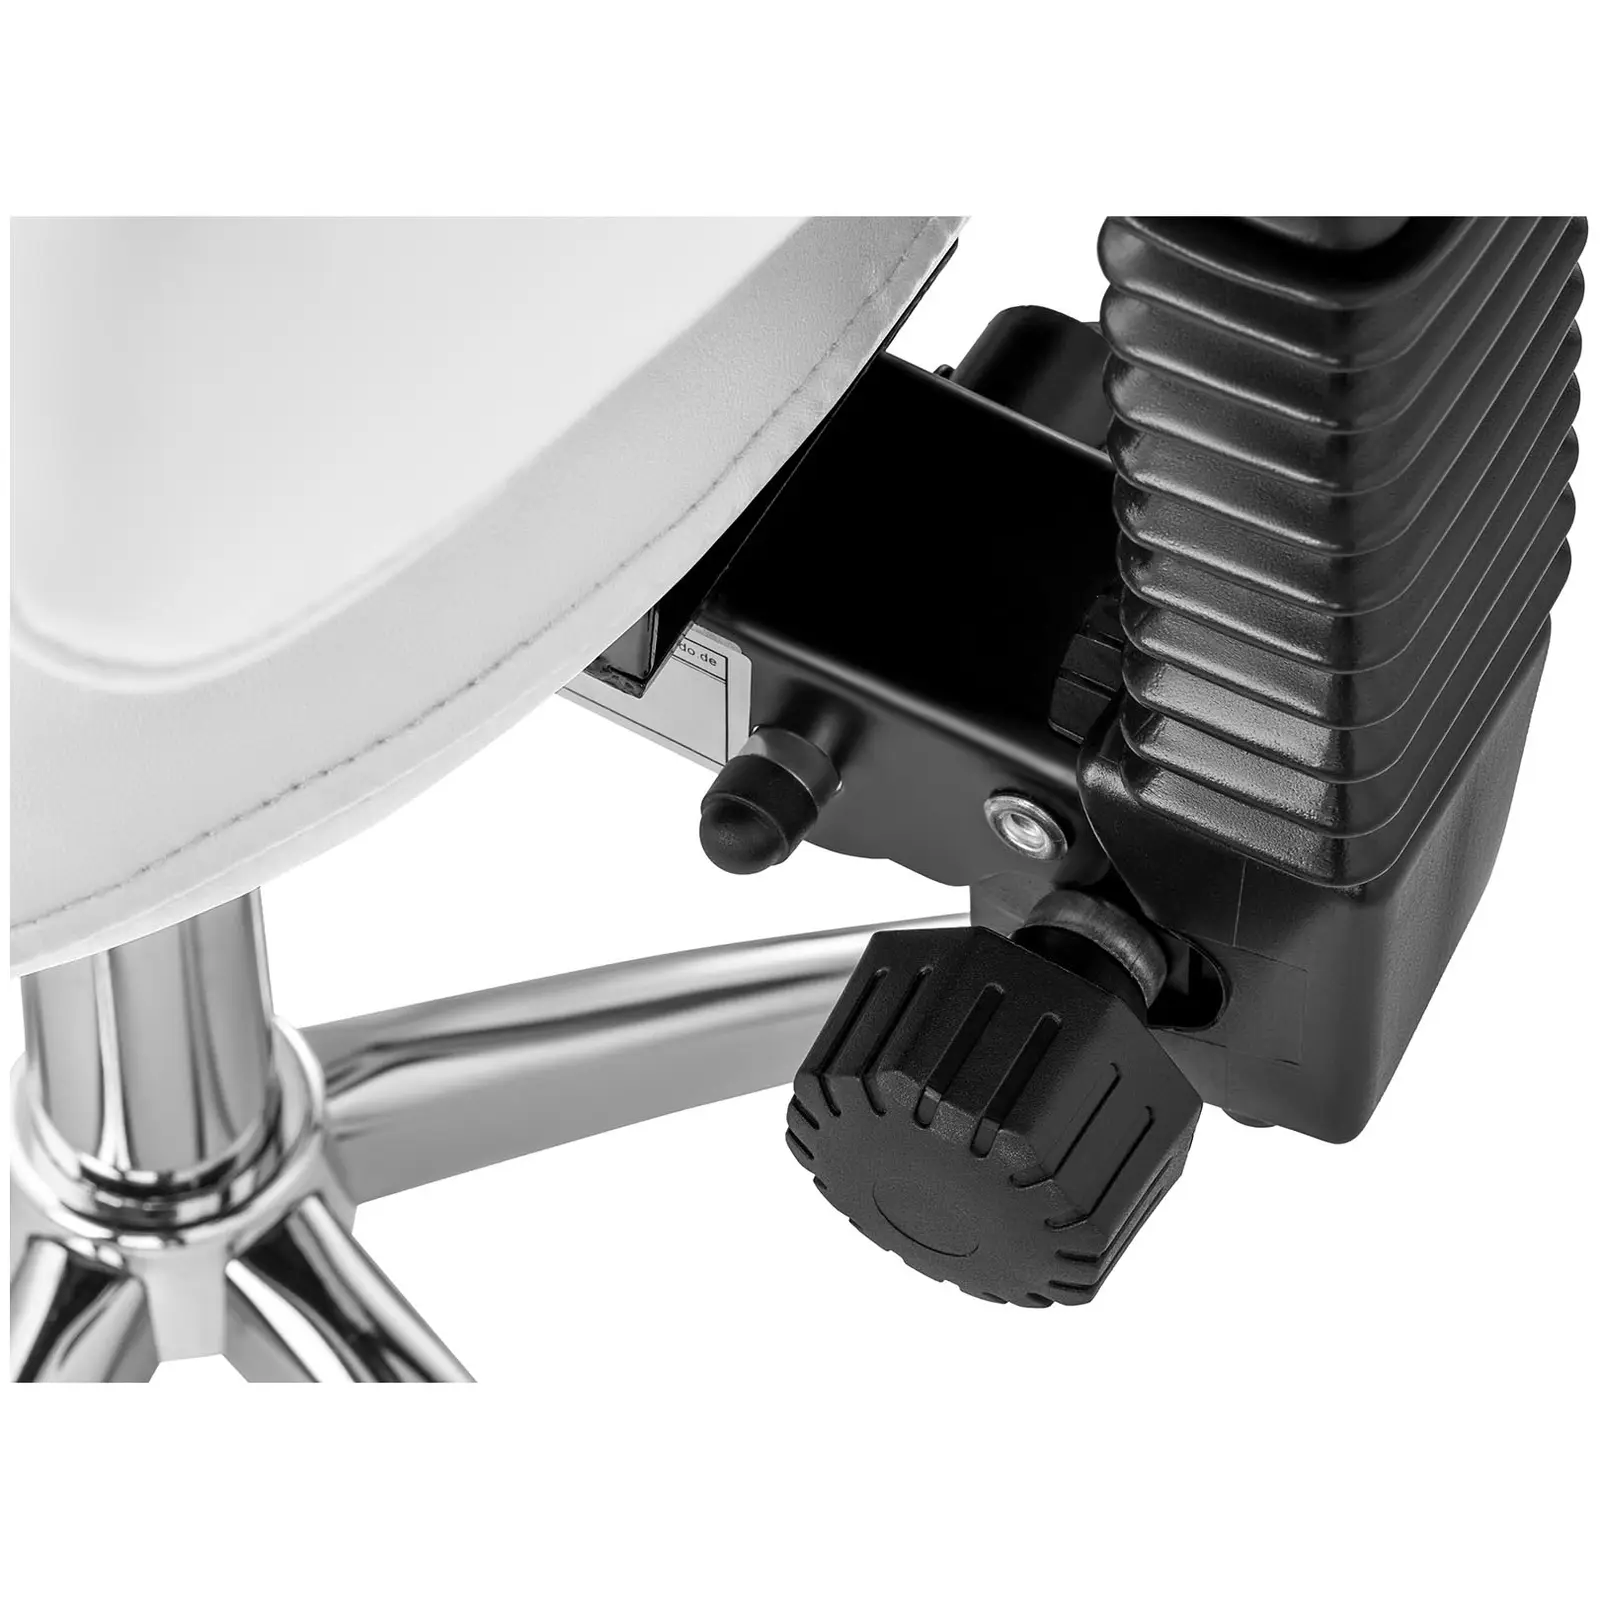 Elektrisk massagebänk och sadelstol - Set - 2 motorer - Fotpedal